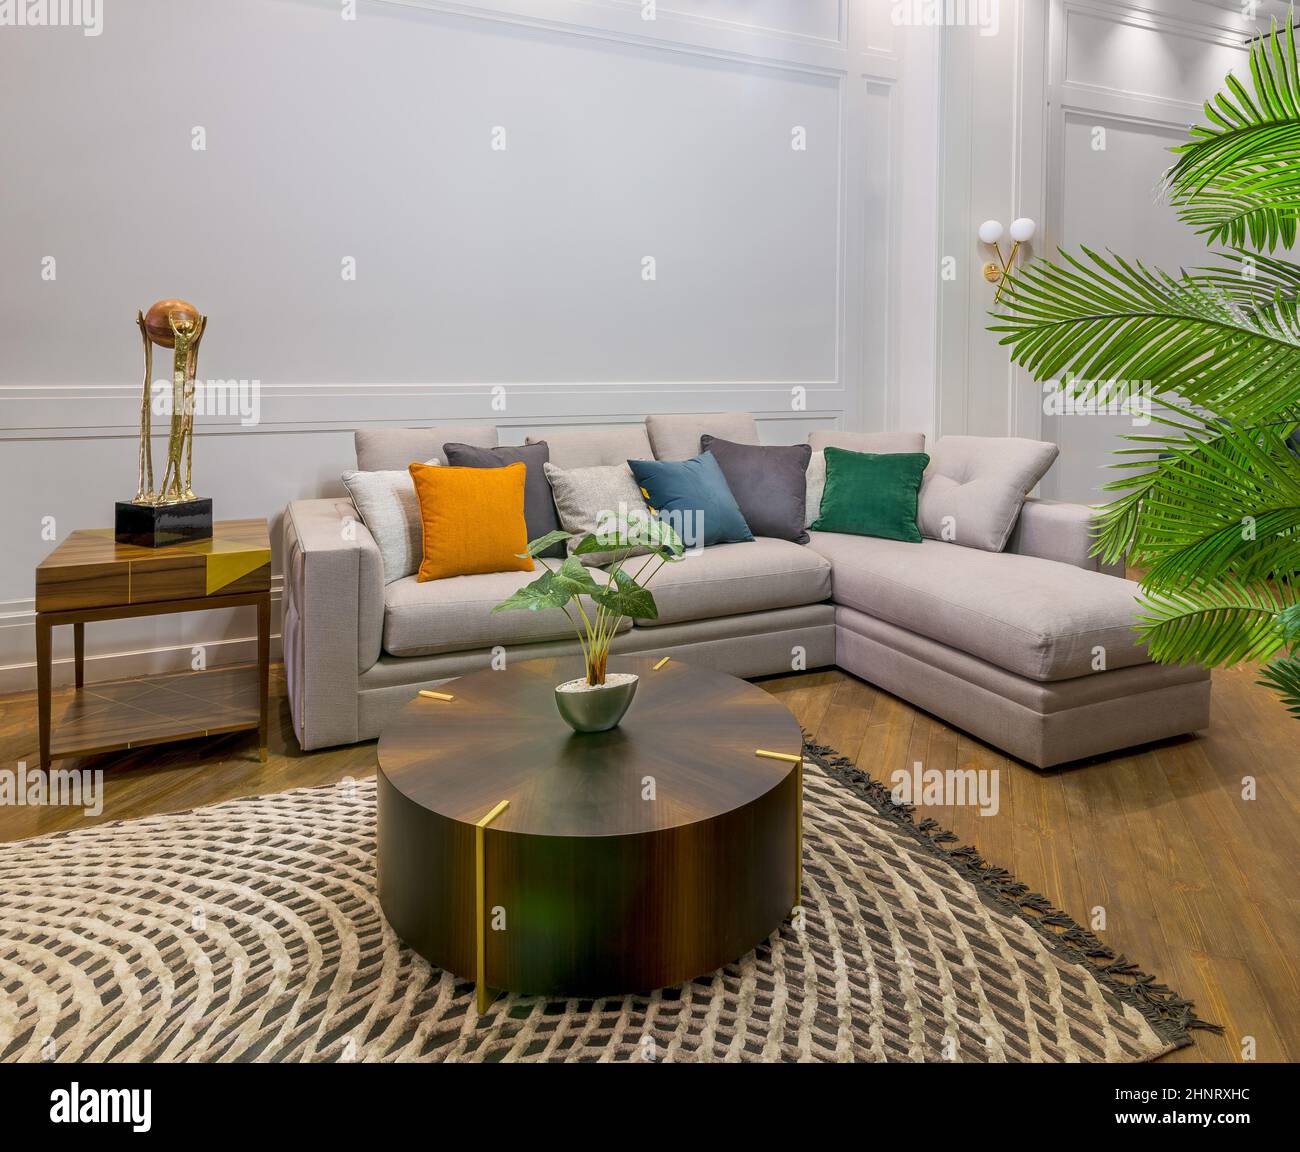 Divano grigio con cuscini colorati posti e tavolo su tappeto in spaziosa  camera moderna con poltrone e piante in vaso verde Foto stock - Alamy